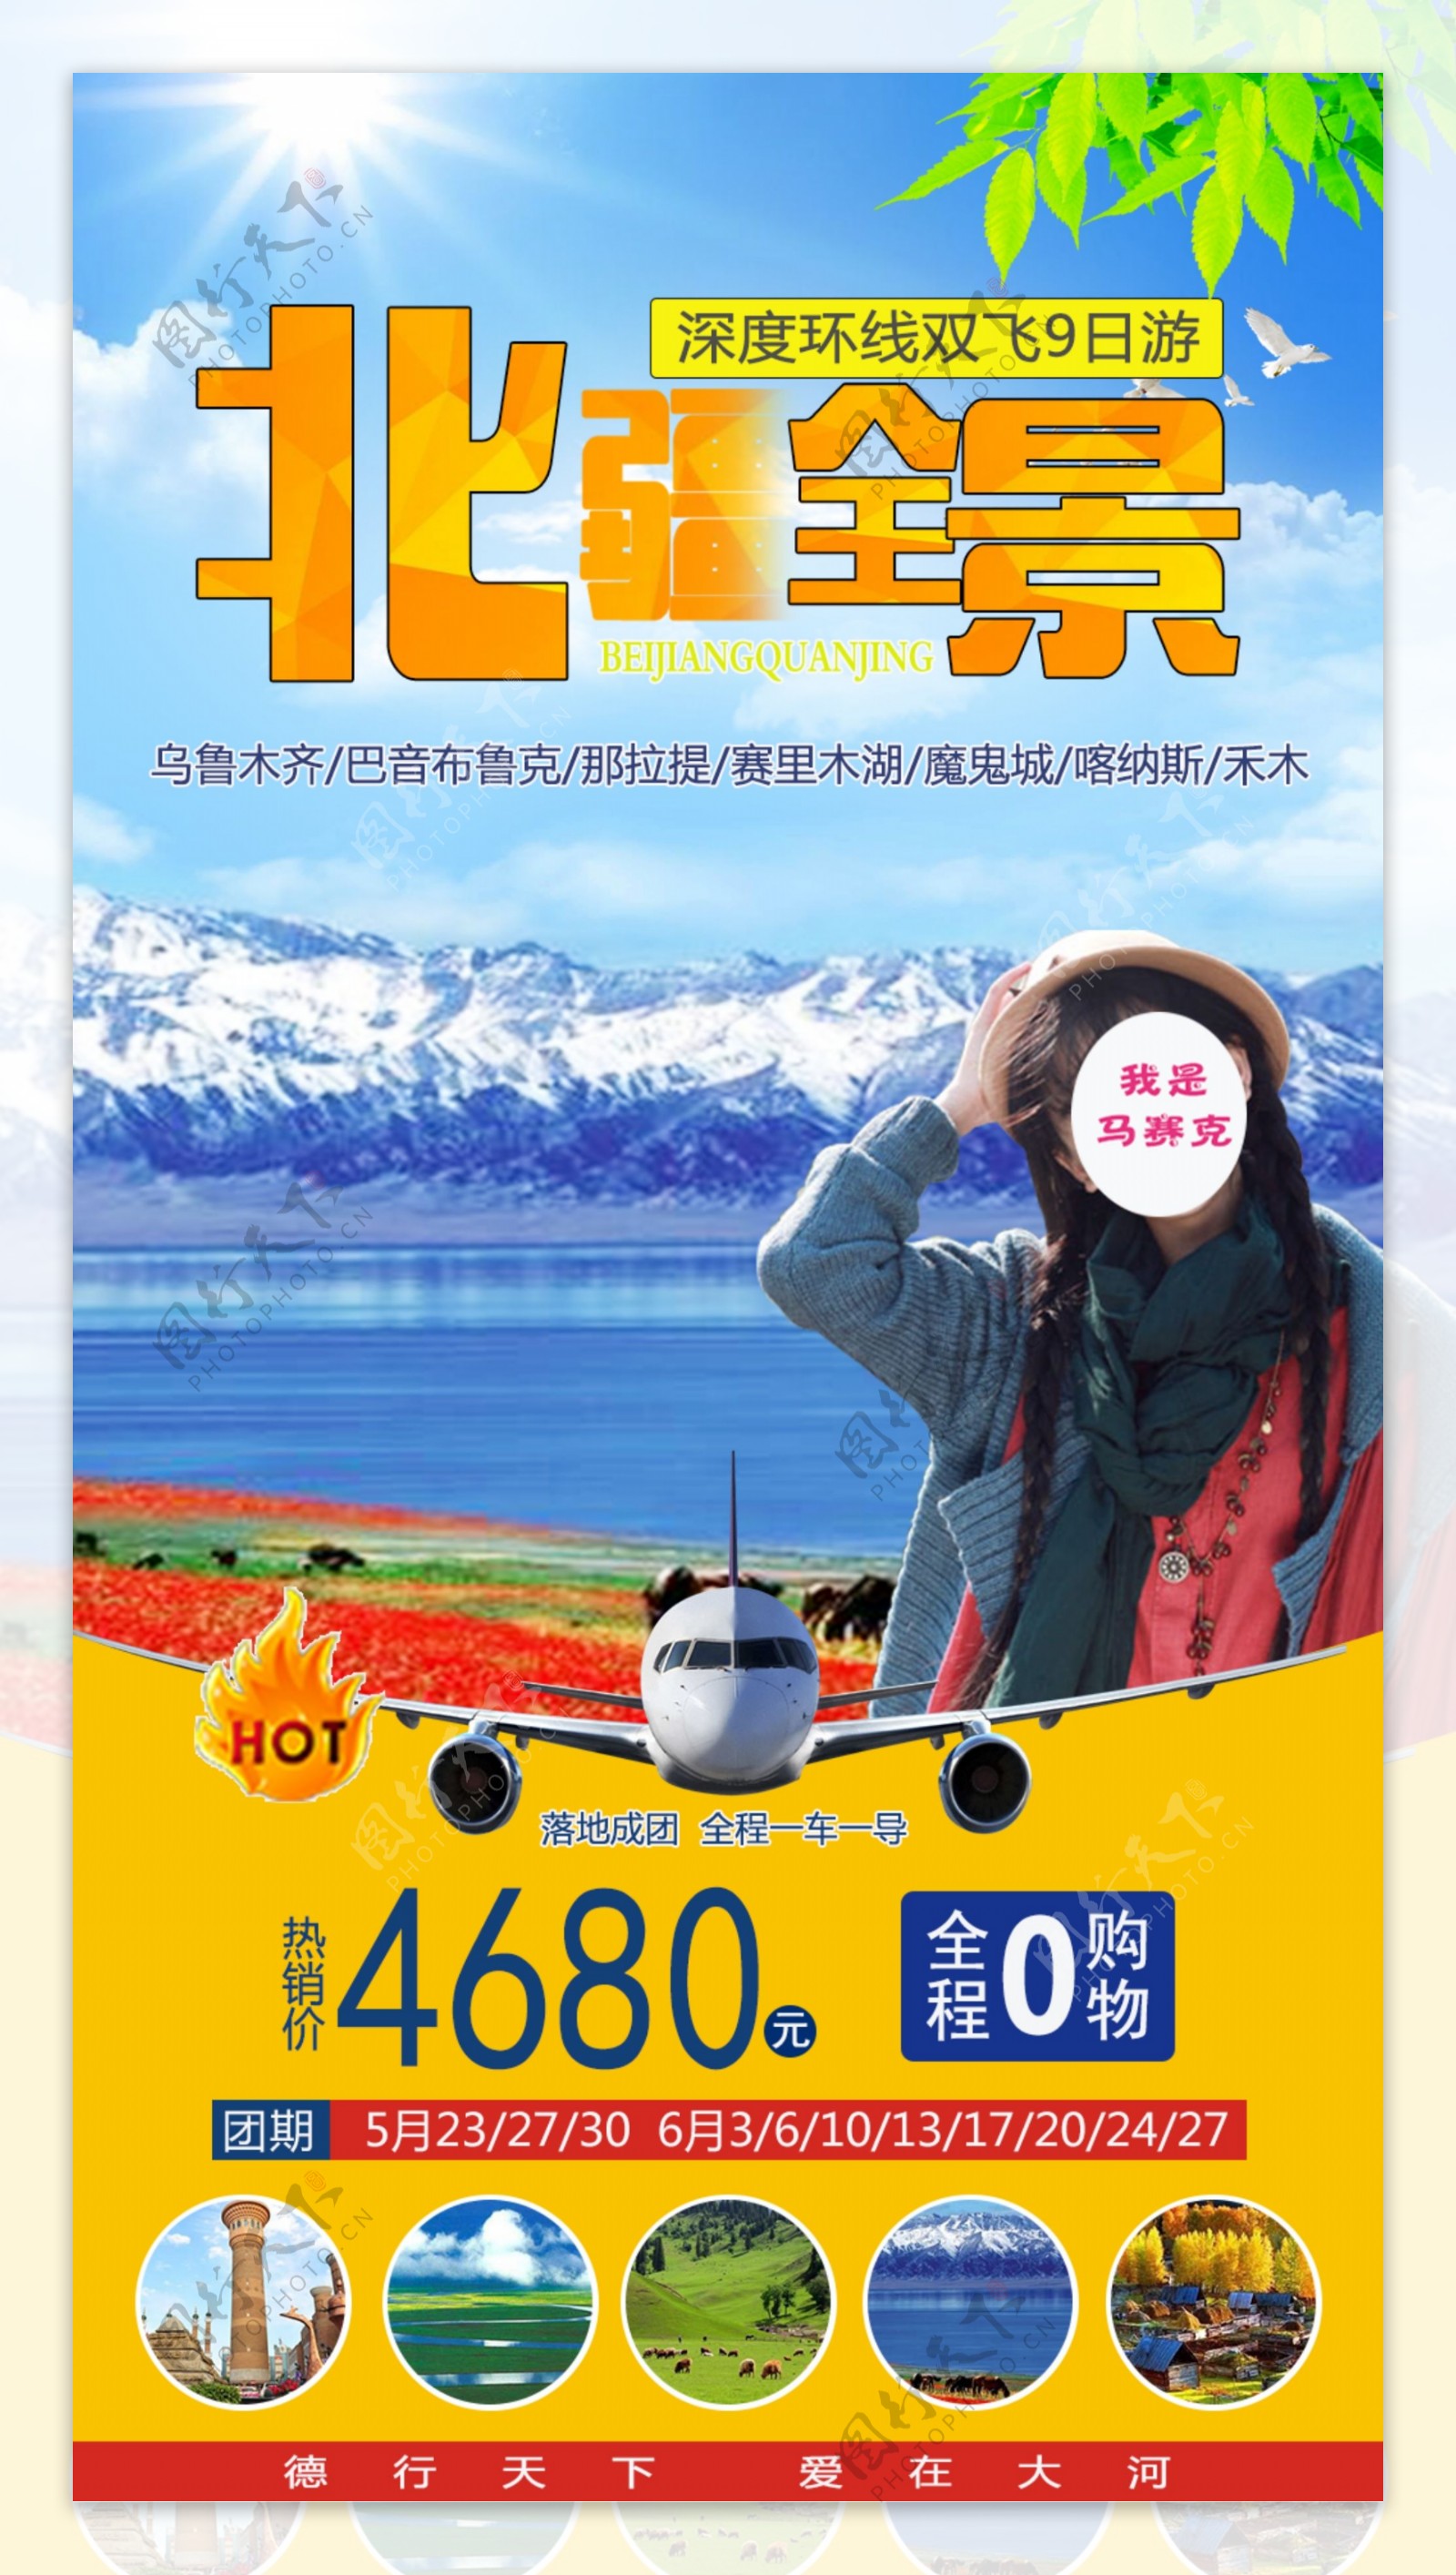 桂林旅游北疆全景海报